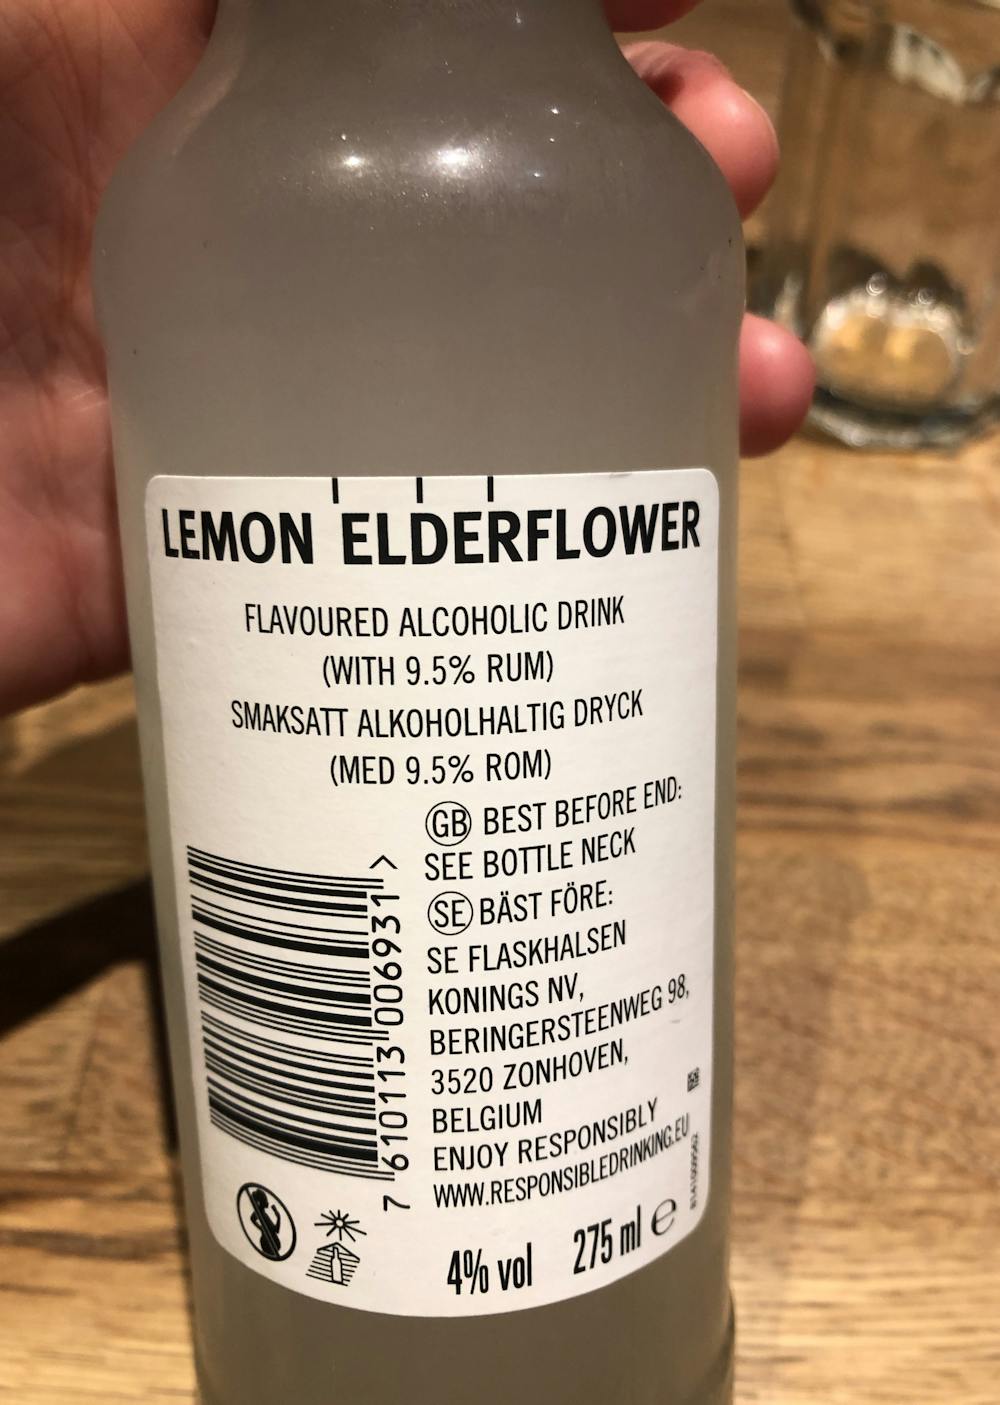 Ingredienslisten til Breezer, Lemon elderflower, Hansa Borg bryggeri